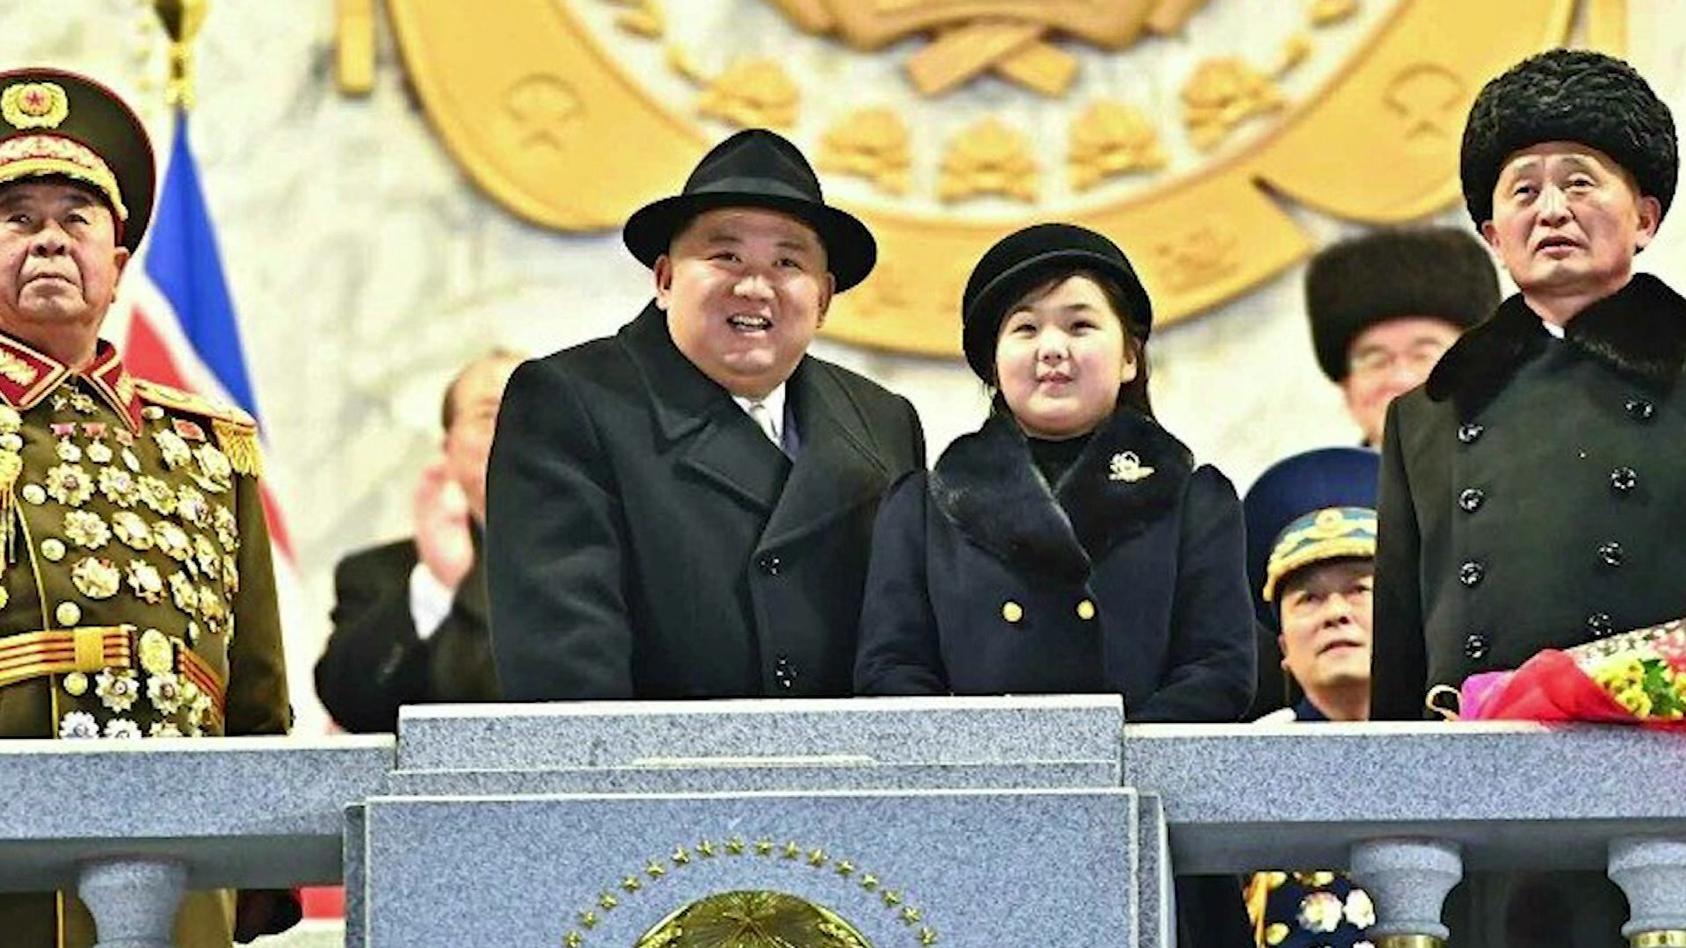 kim-yong-un-nimmt-die-militarparade-ab-im-dunklen-mantel-und-mit-hut